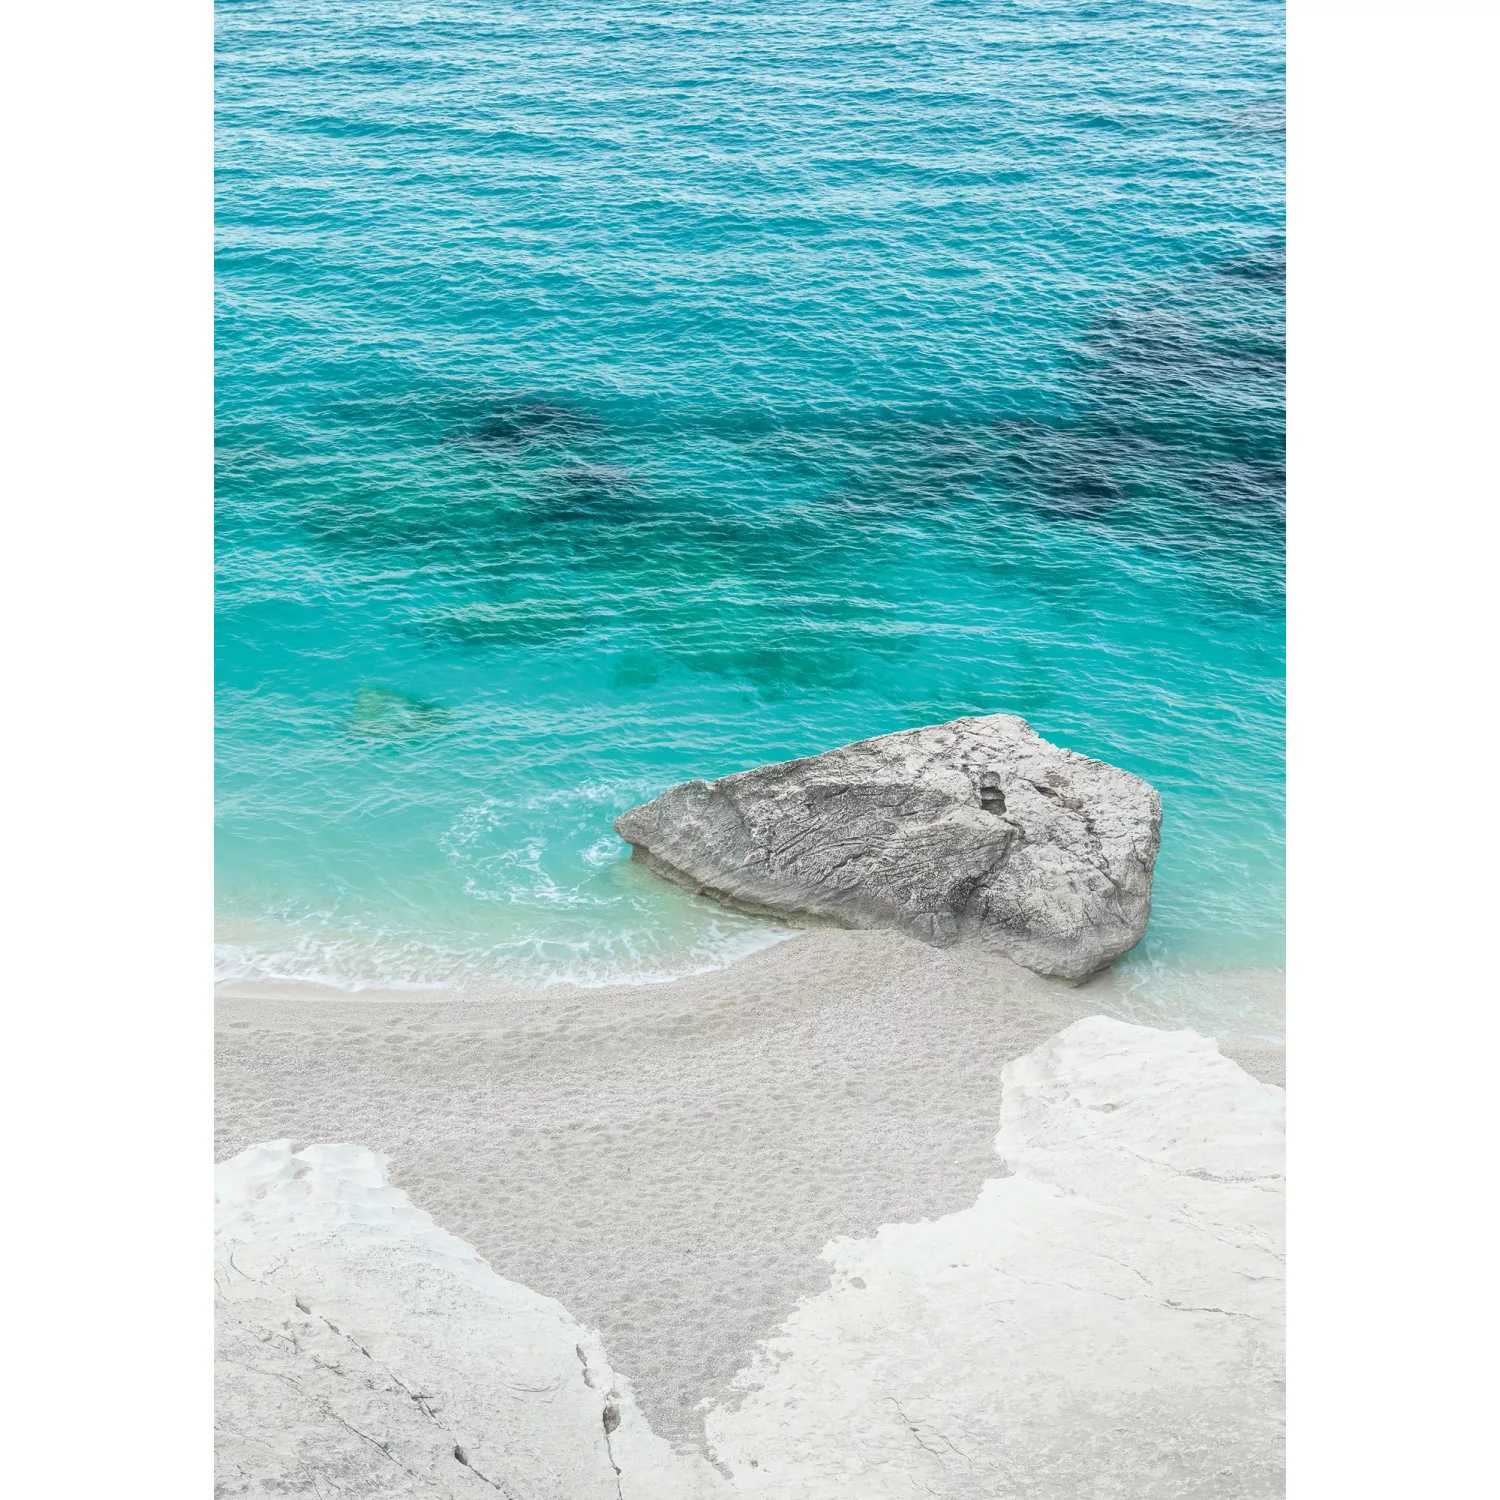 KOMAR Vlies Fototapete - Dreambay - Größe 200 x 280 cm mehrfarbig günstig online kaufen